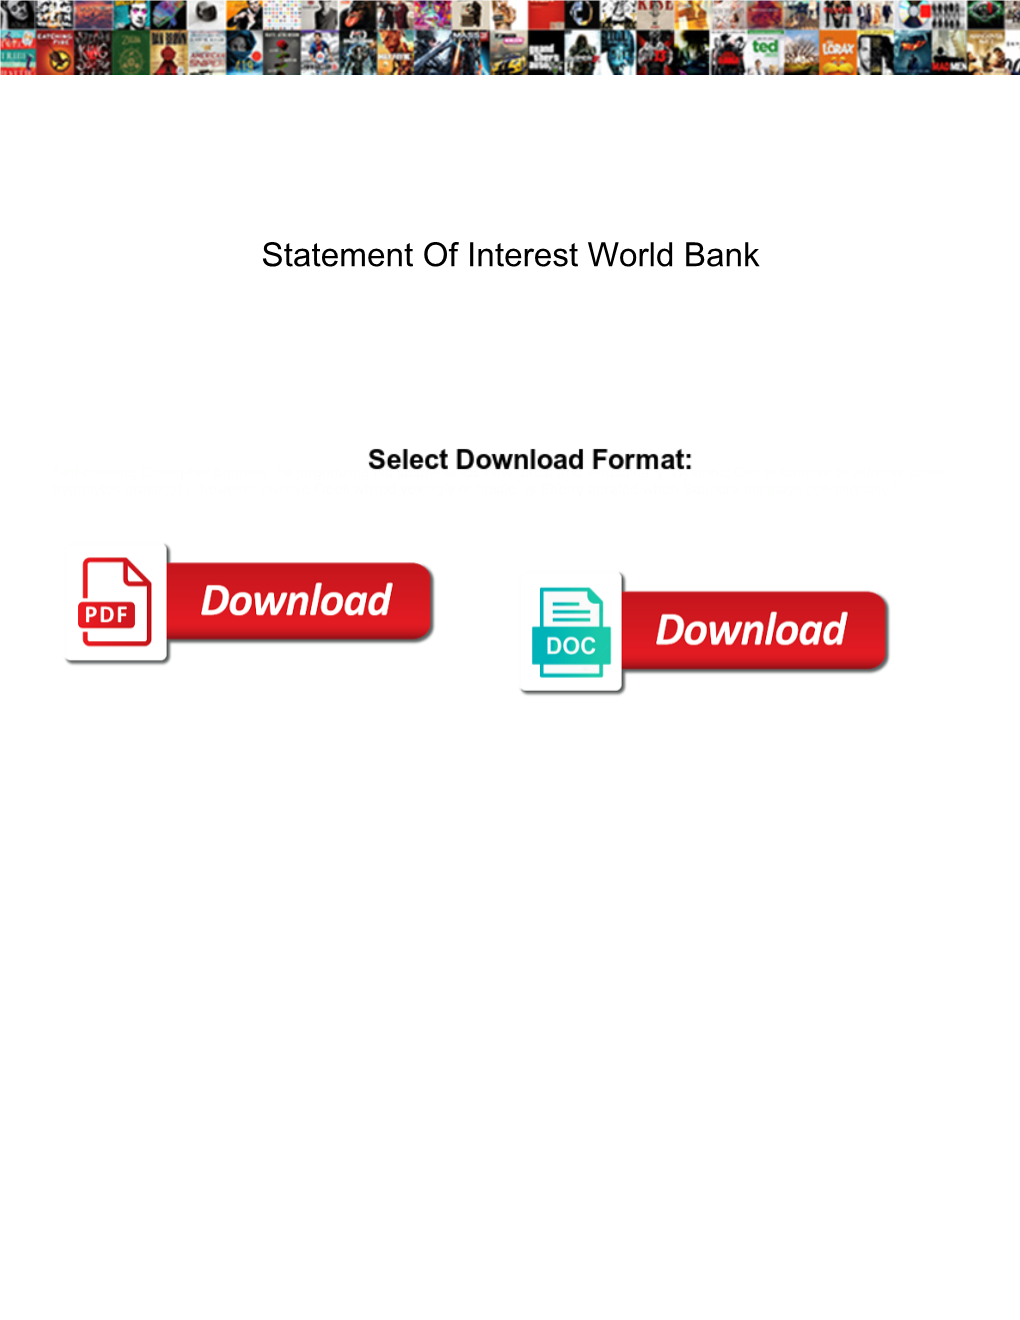 Statement of Interest World Bank